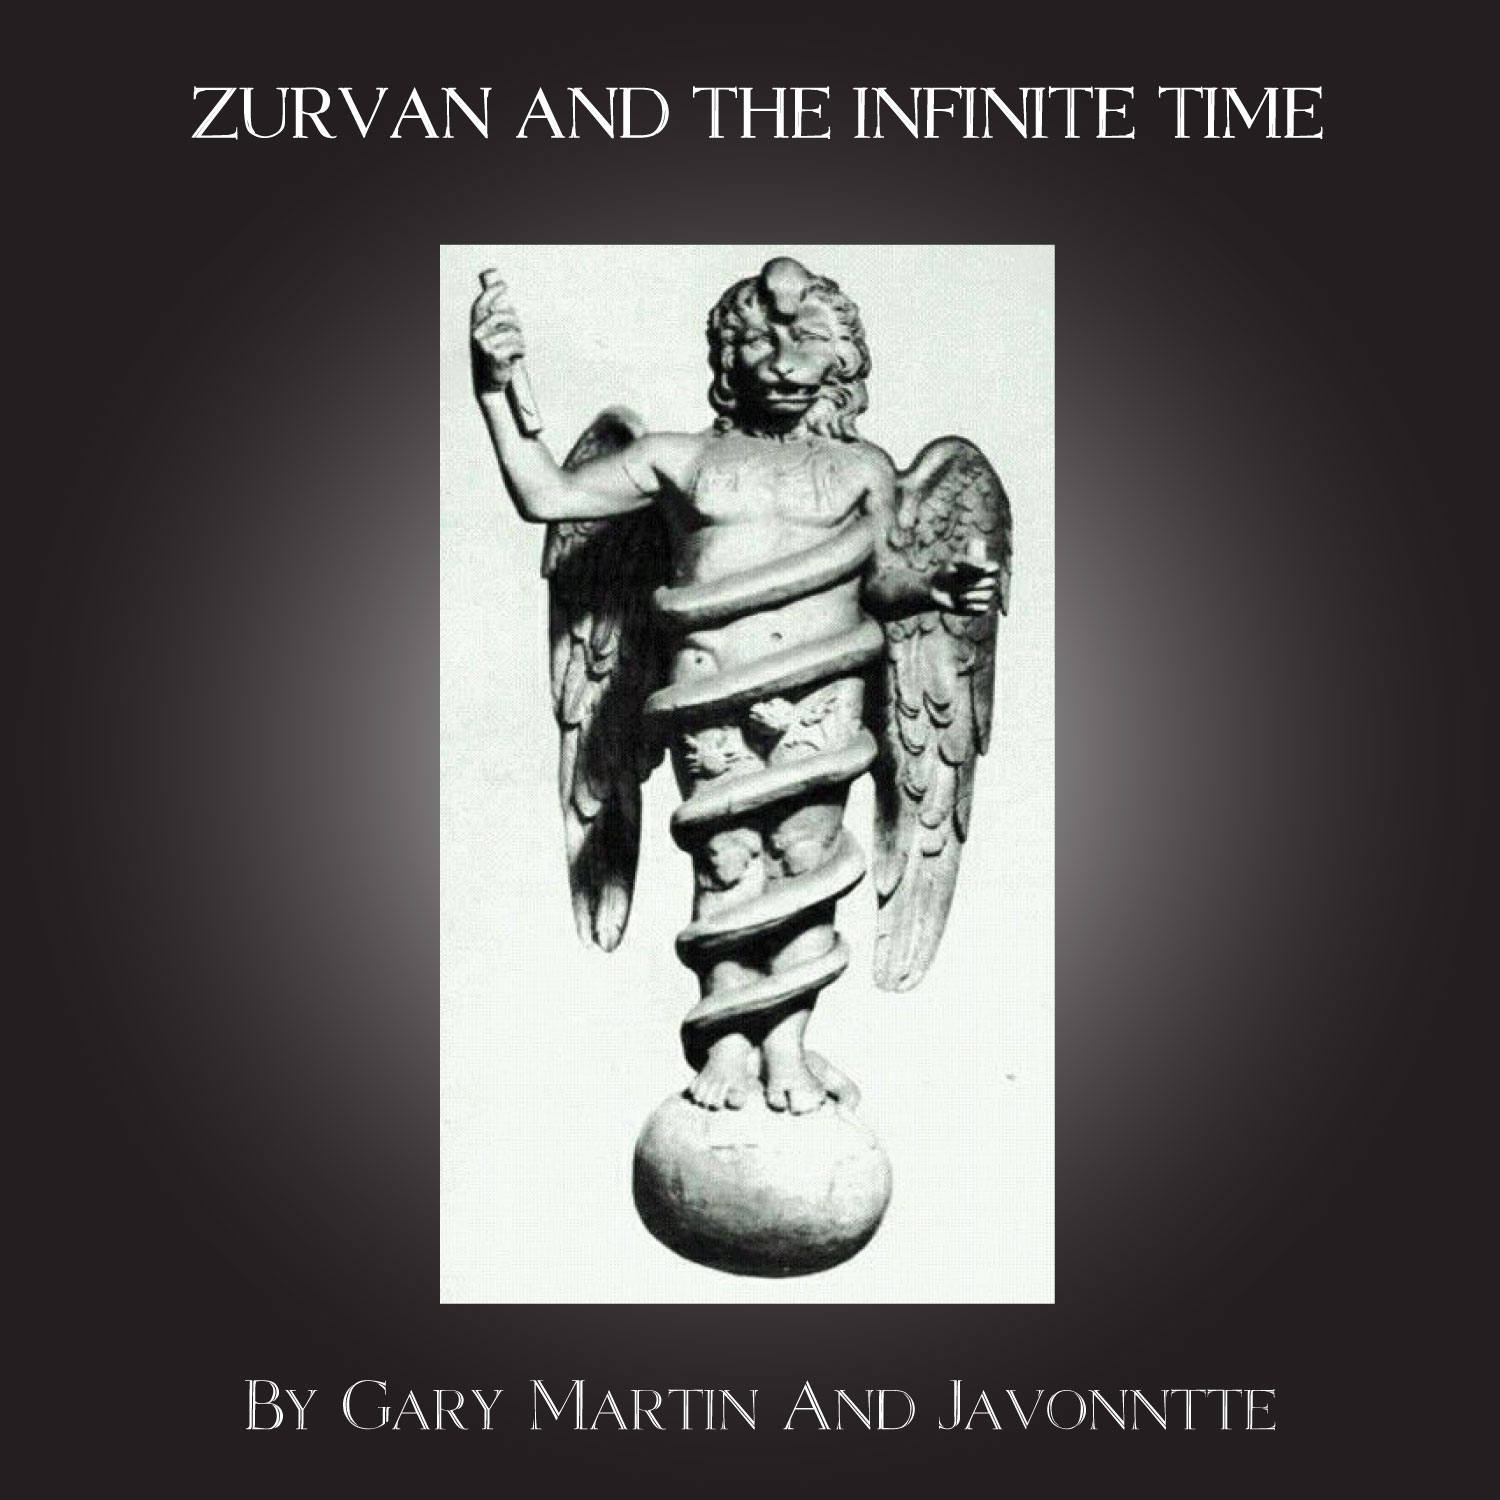 Gary Martin & Javonntte/ZURVAN 12"